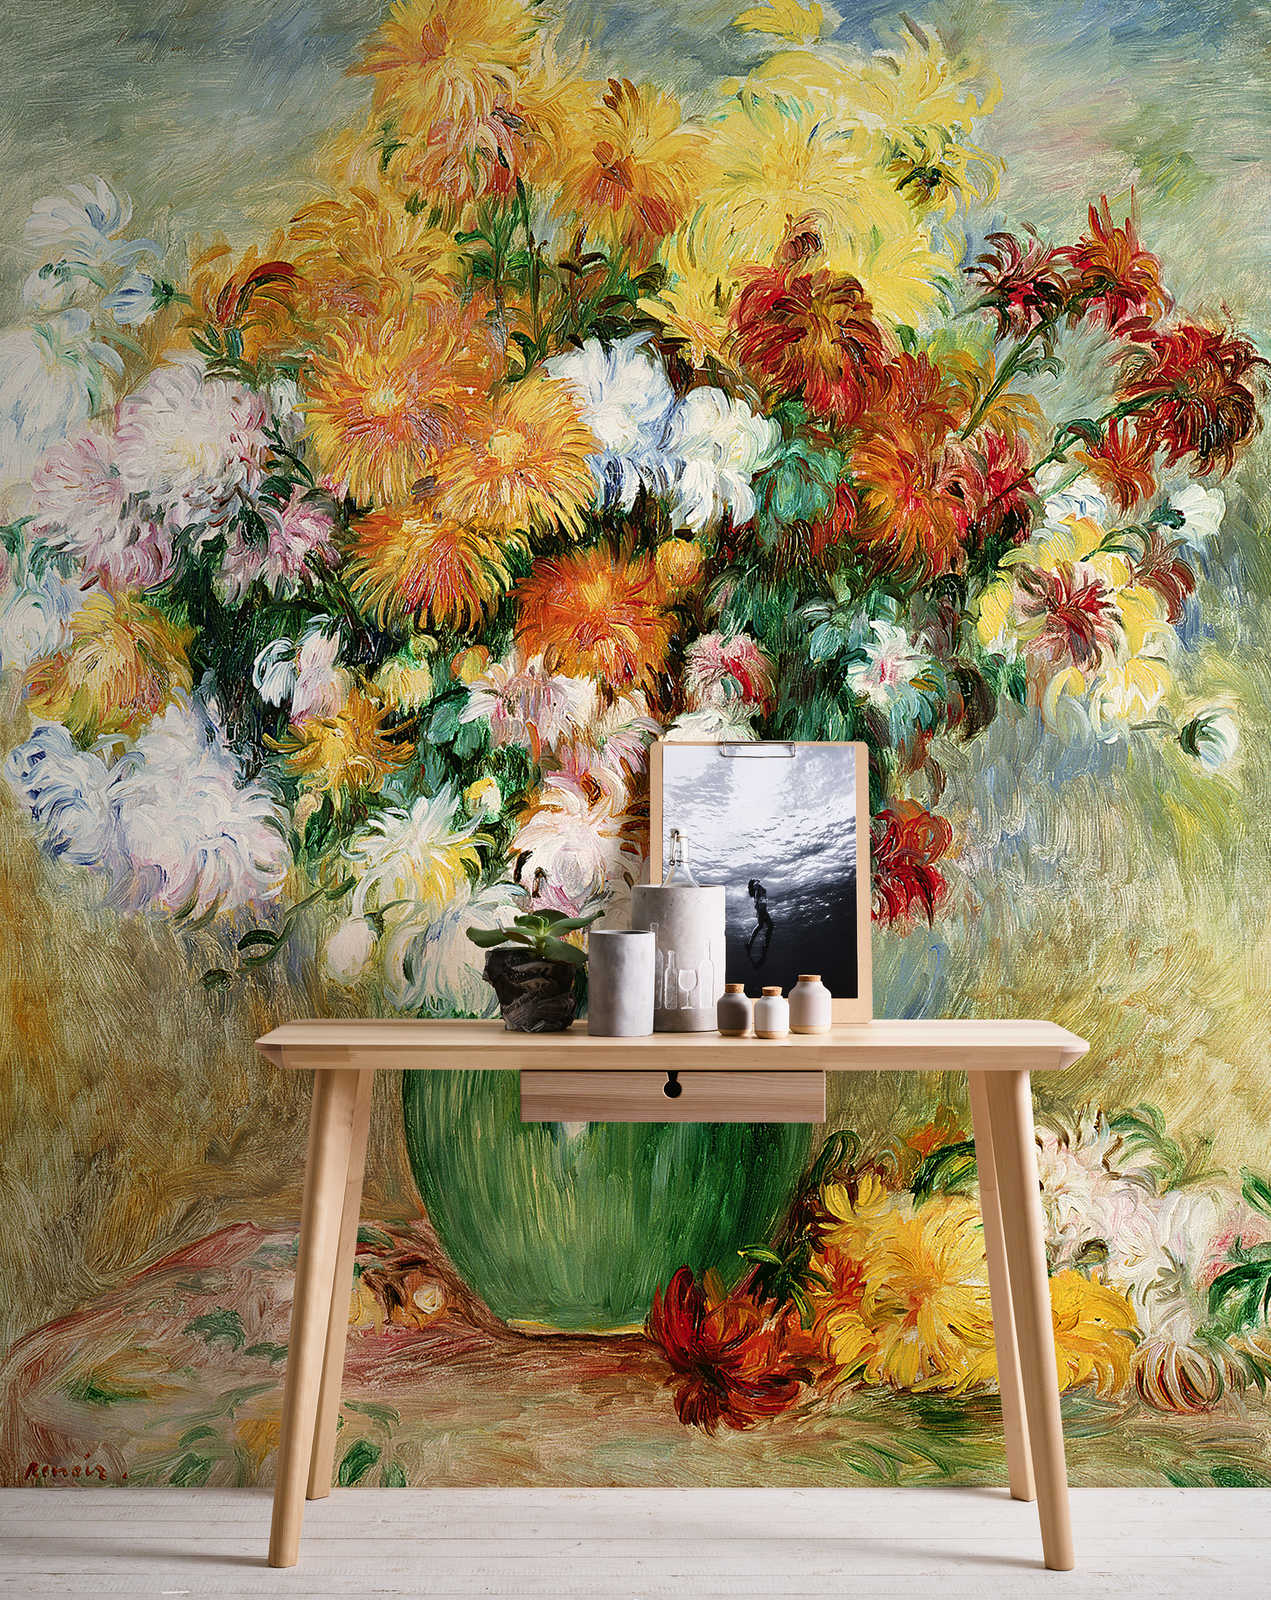             Fototapete "Blumenstrauß mit Chrysanthemen" von Pierre Auguste Renoir
        